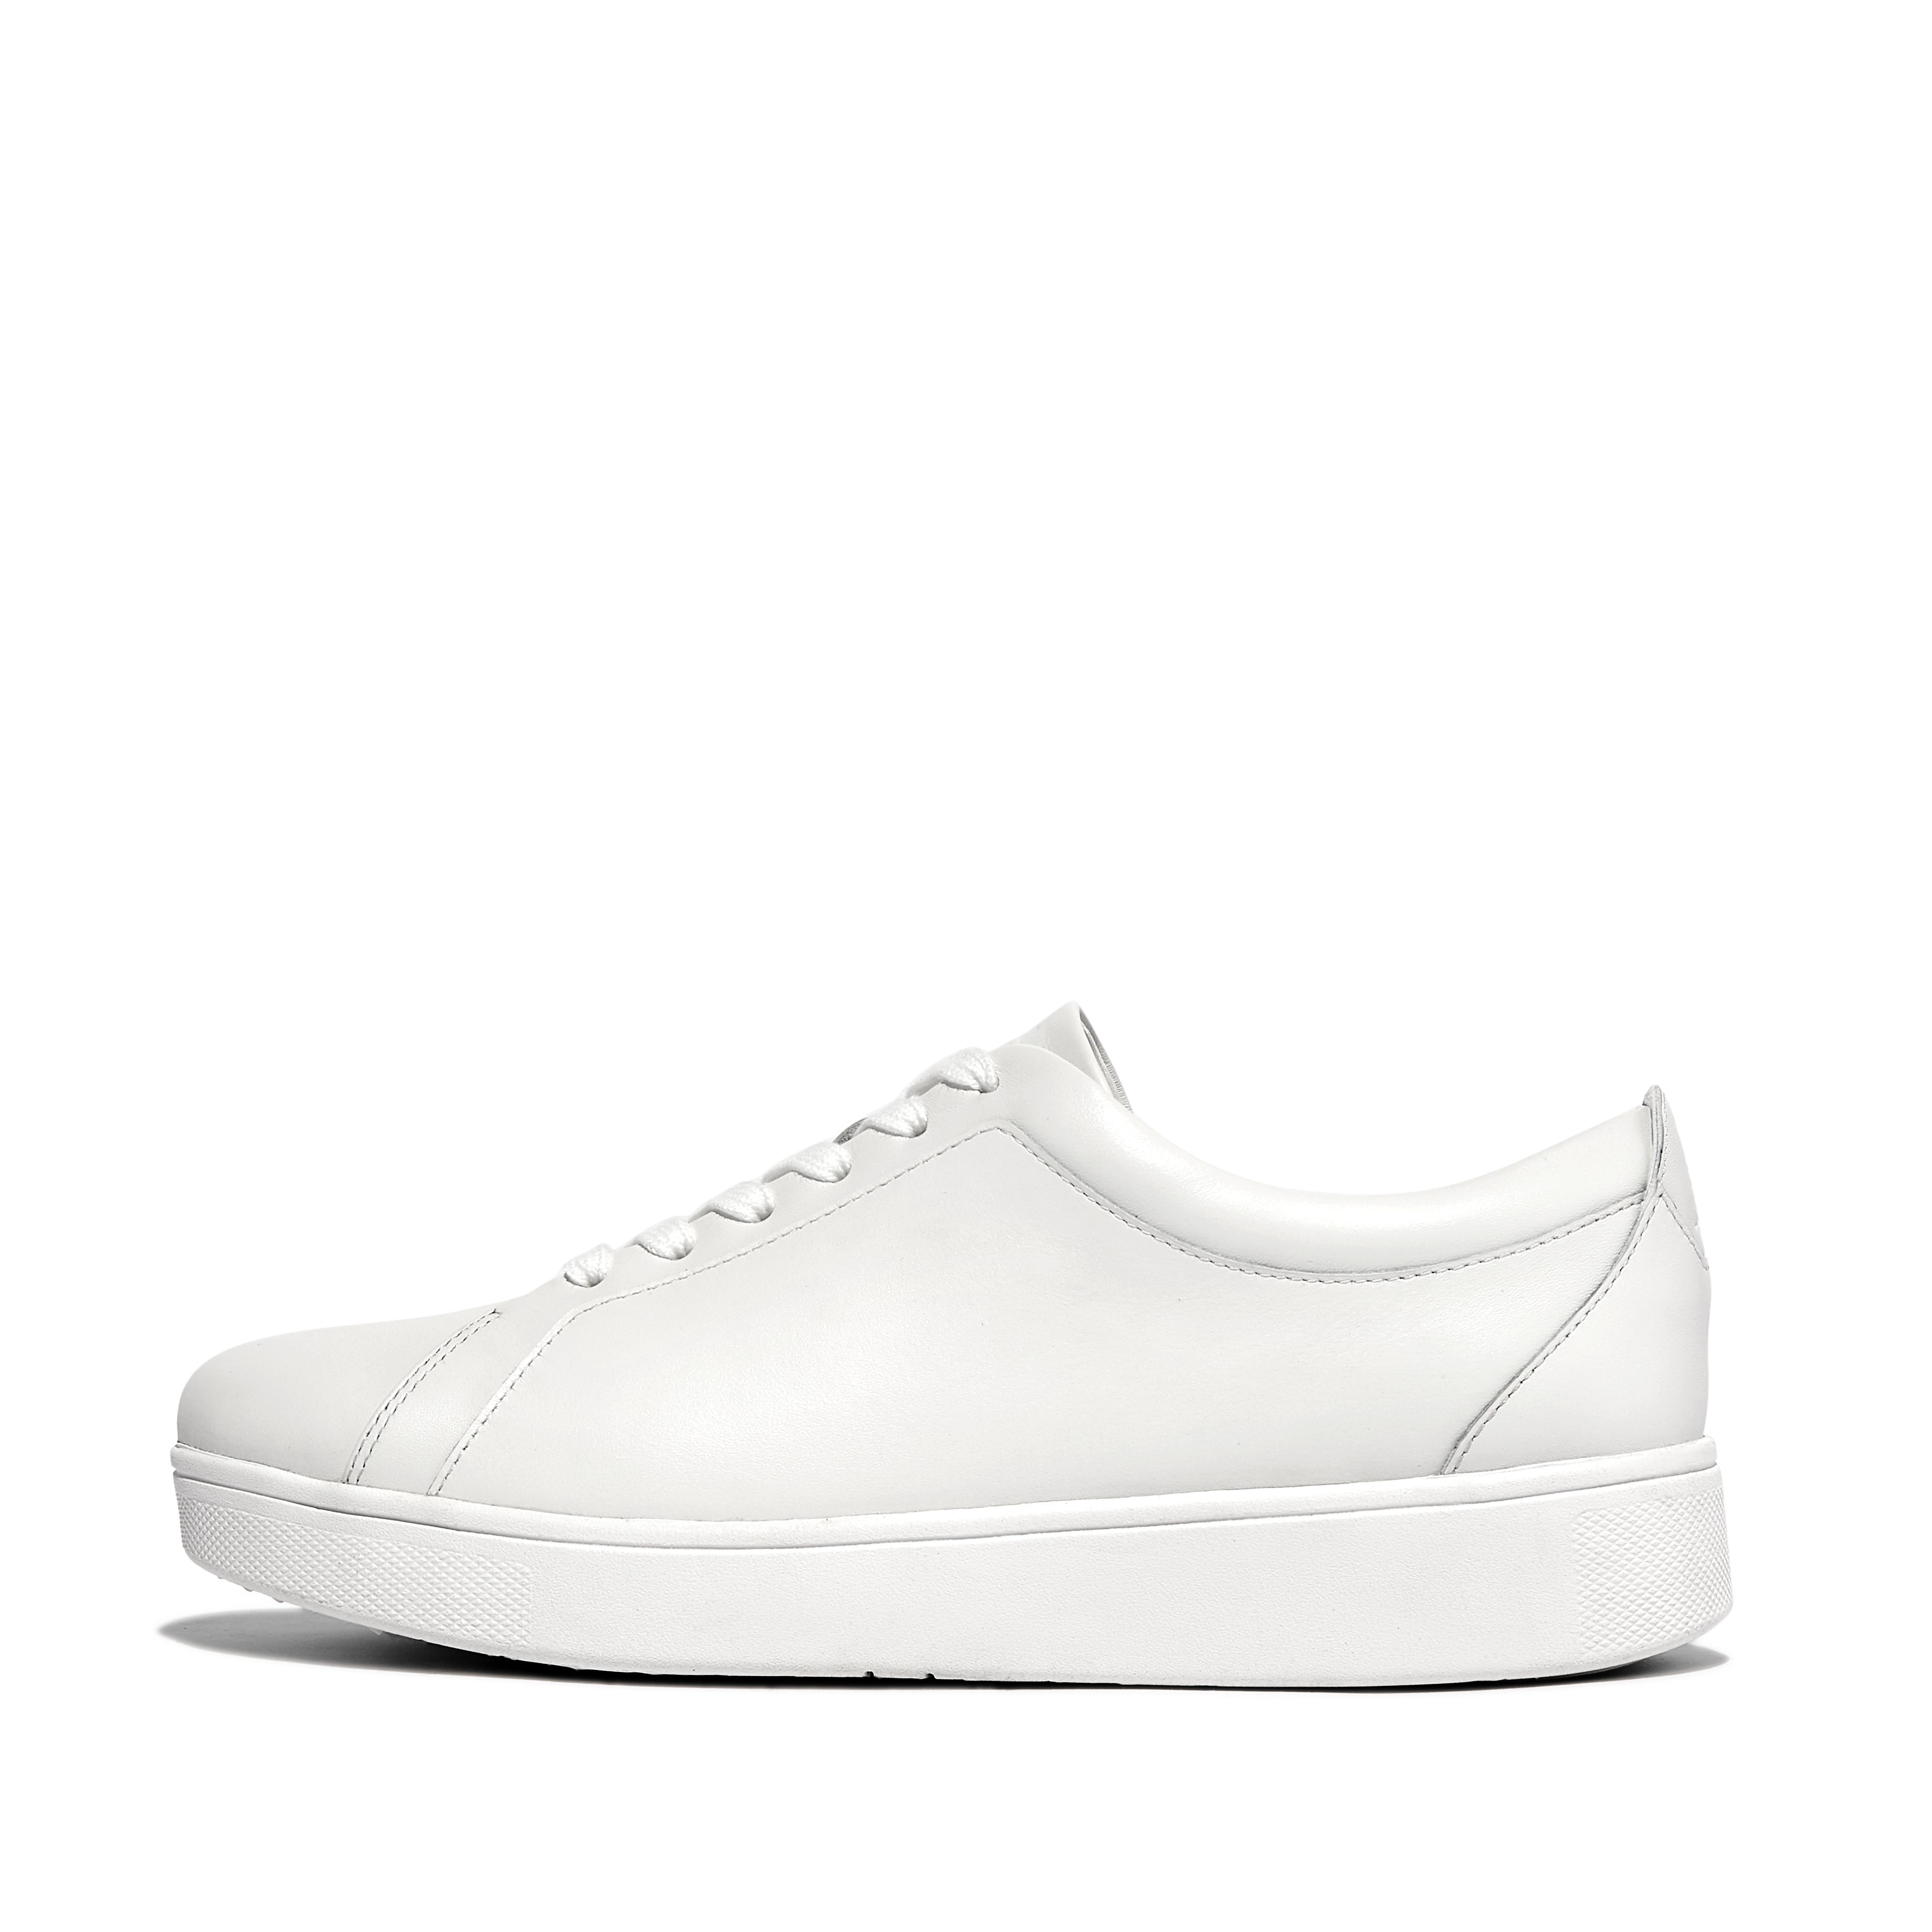 핏플랍 스니커즈 FitFlop RALLY Leather Sneakers,Urban White